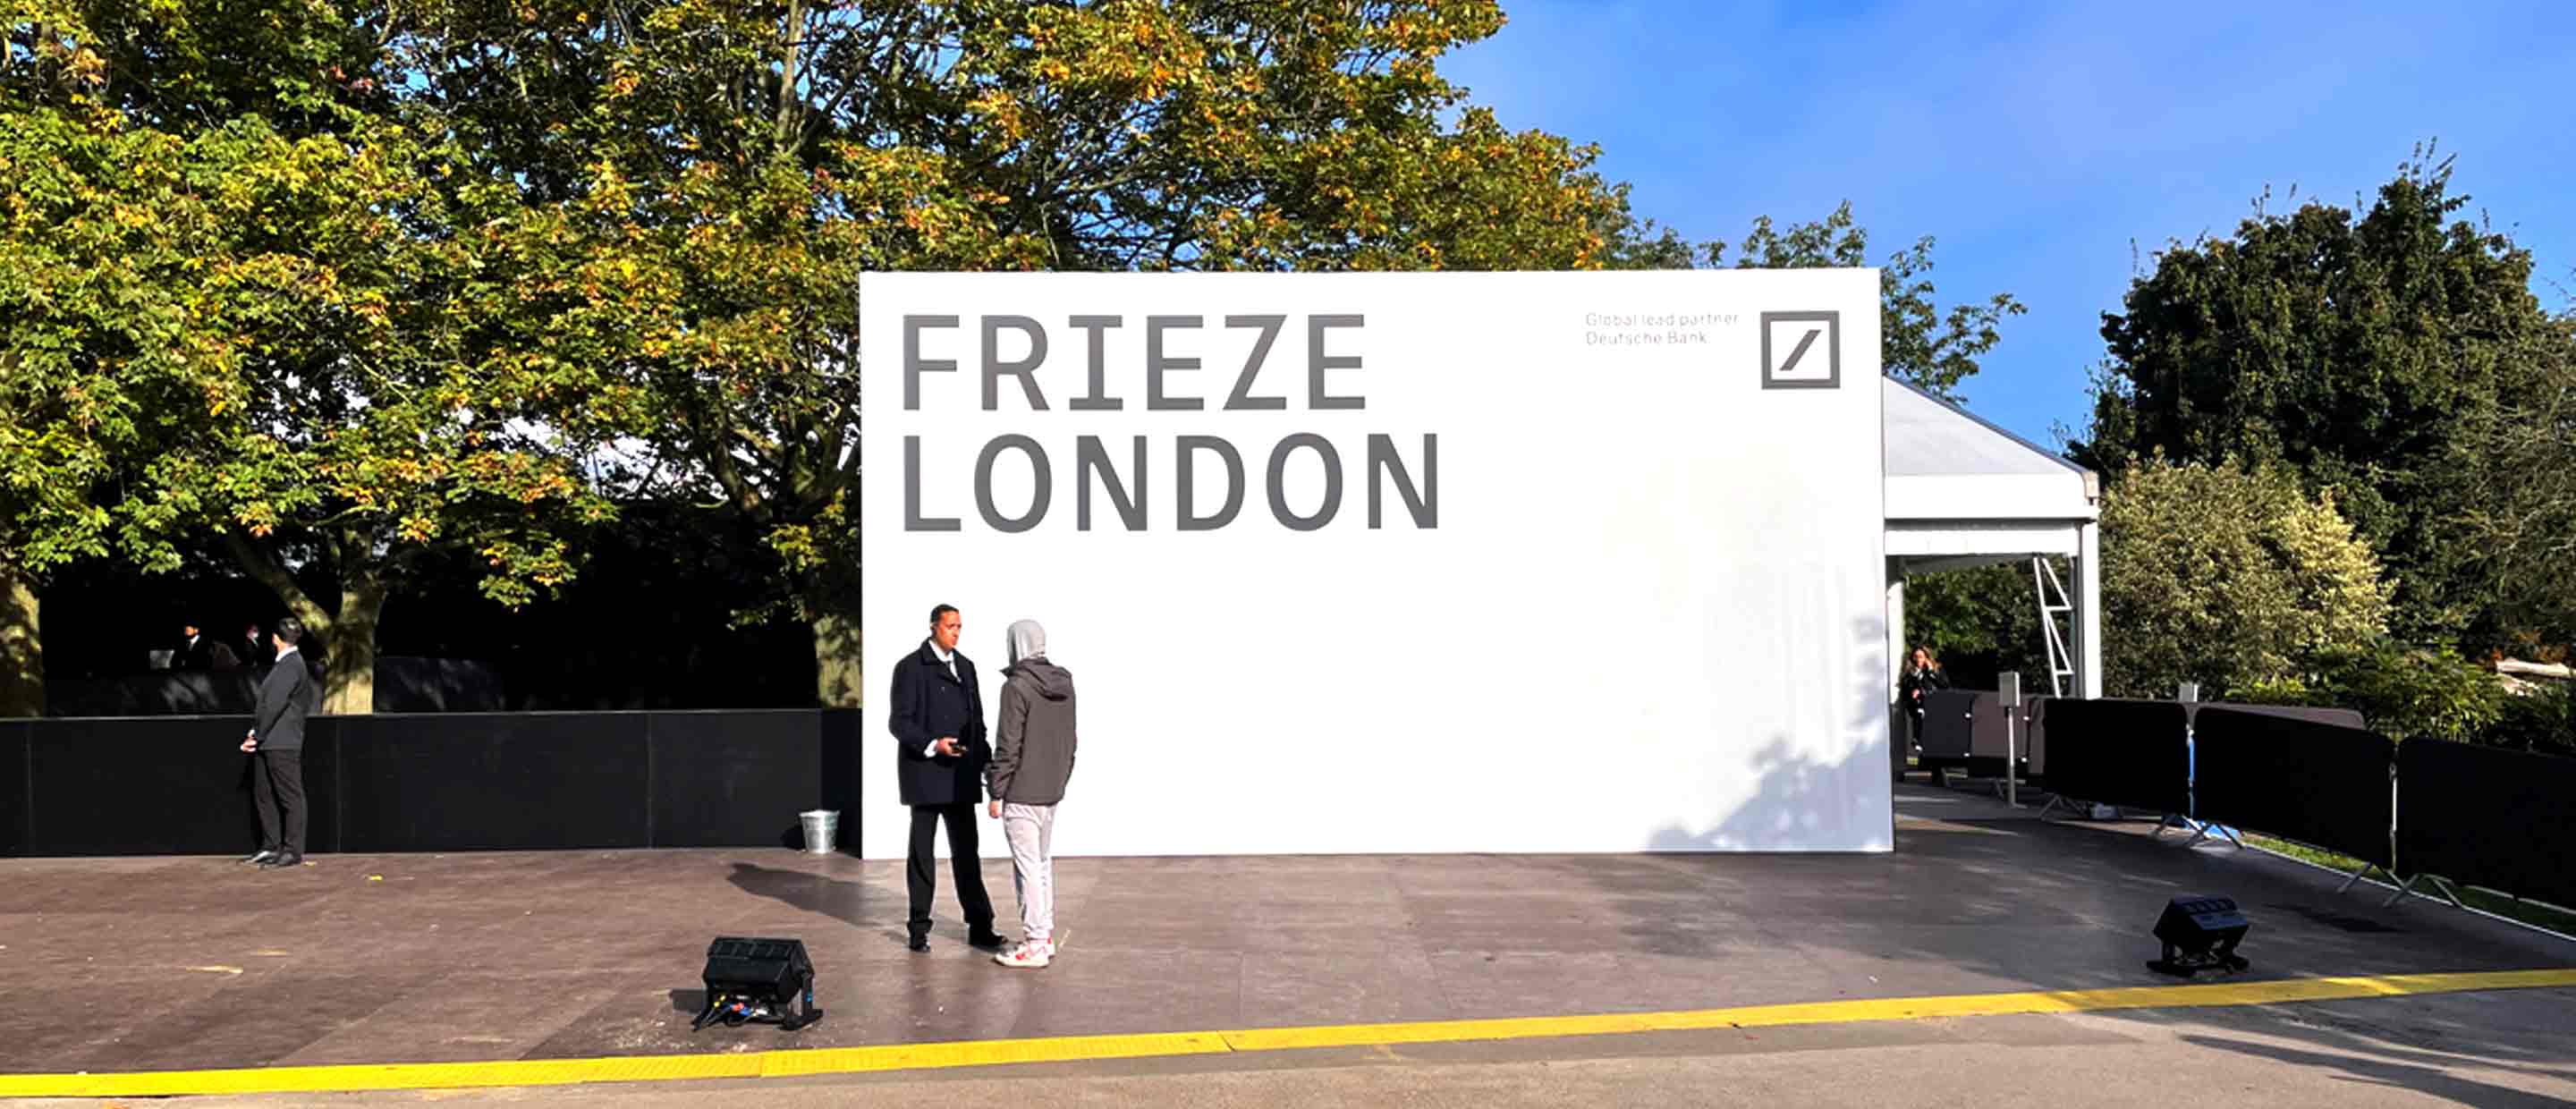 Frieze-london-event.jpg